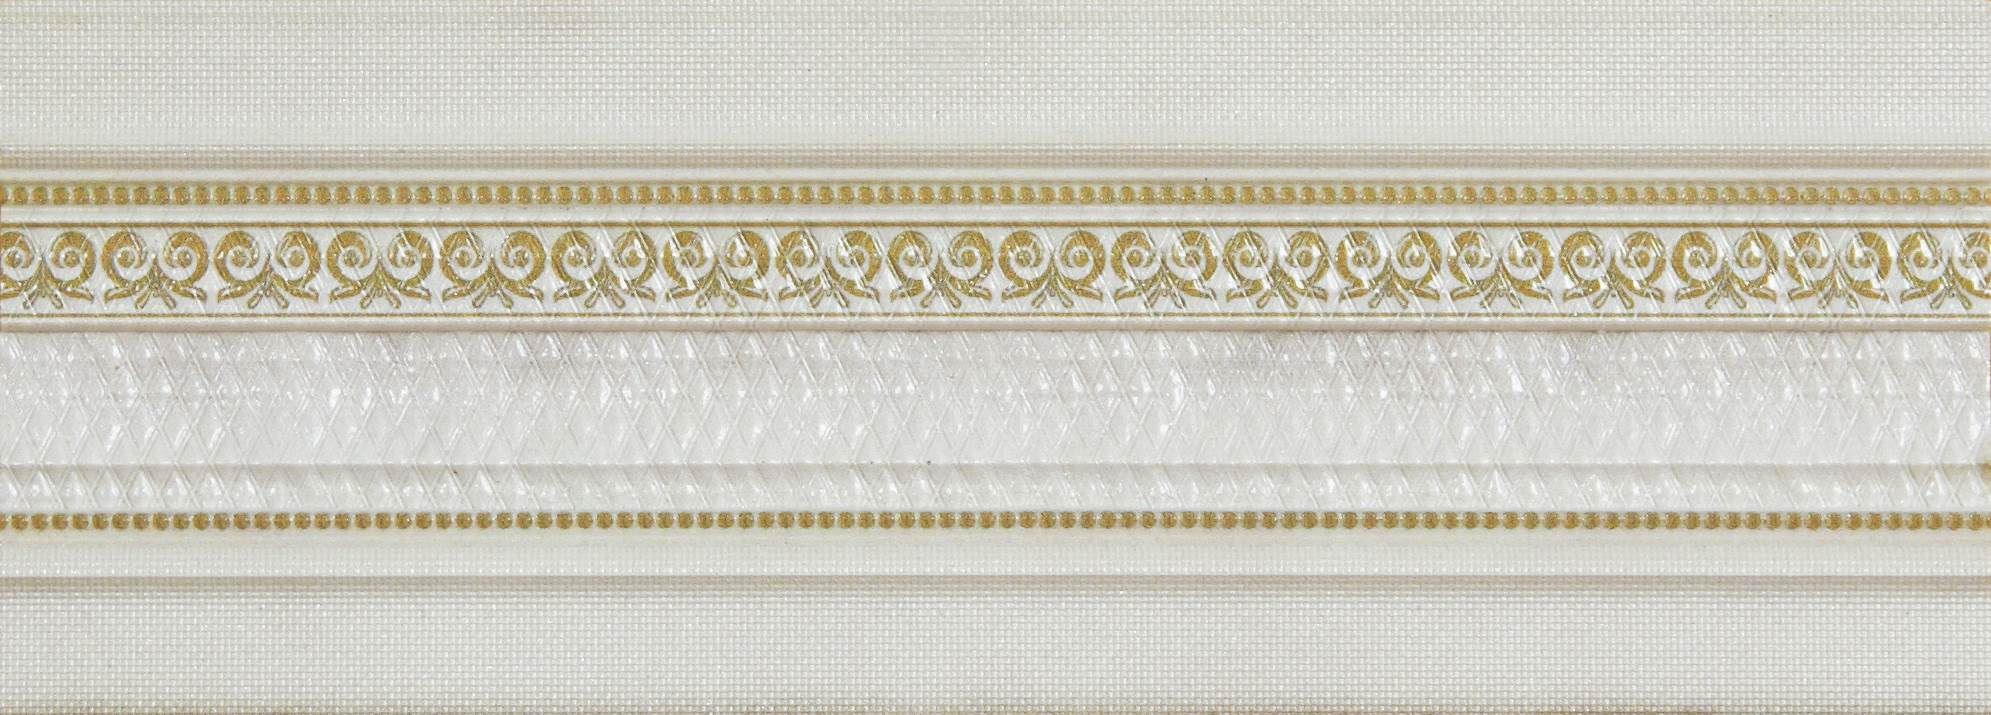 Керамическая плитка LISTELO 10,5X29,5 CM CHESTER IVORY / коллекция CHESTER / производитель NEWKER / страна Испания